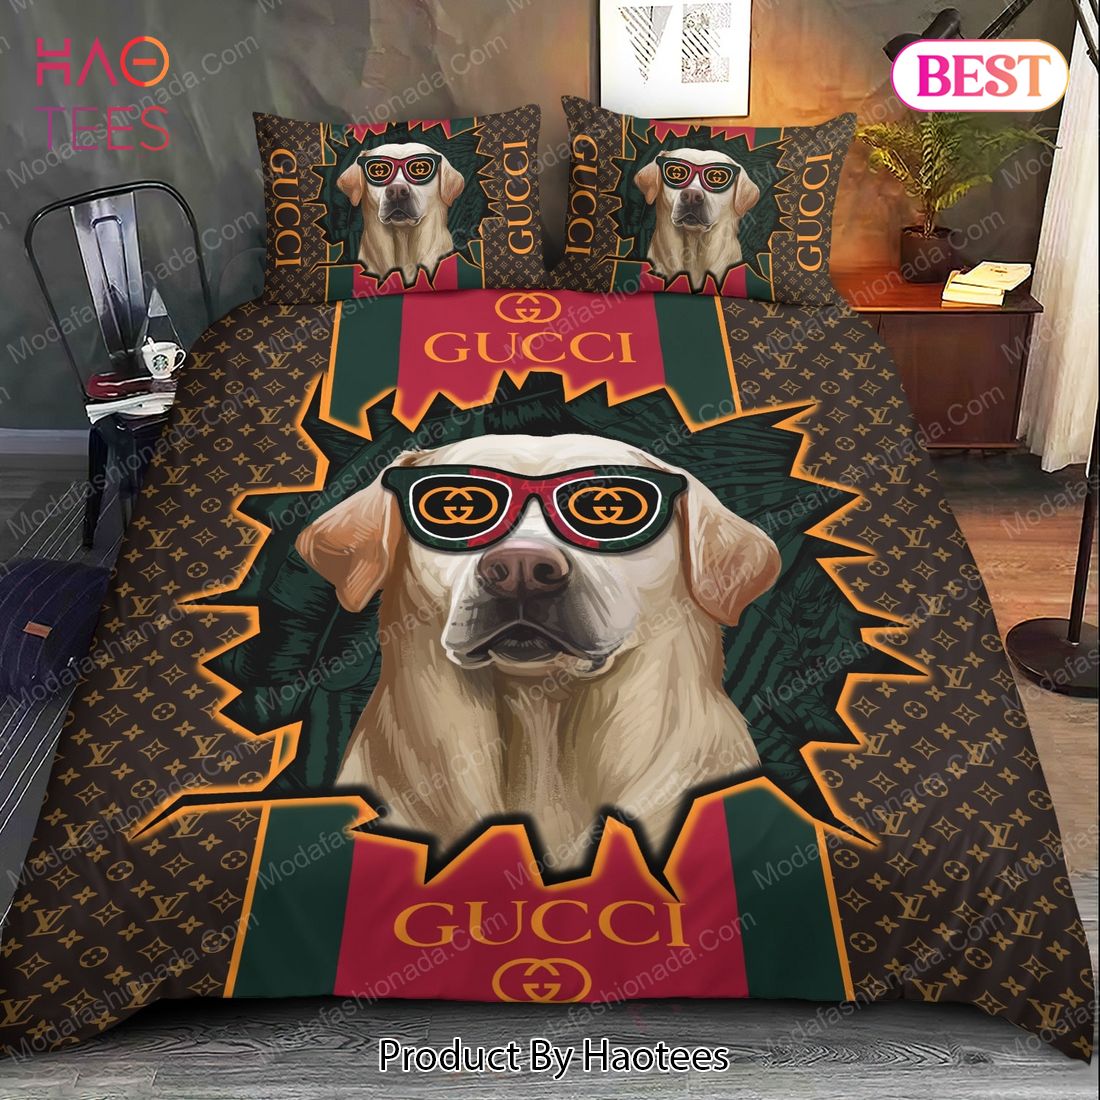 Buy Labrador Retrievers Gucci Bedding Sets Bed Sets, Bedroom Sets, Comforter Sets, Duvet Cover, Bedspread